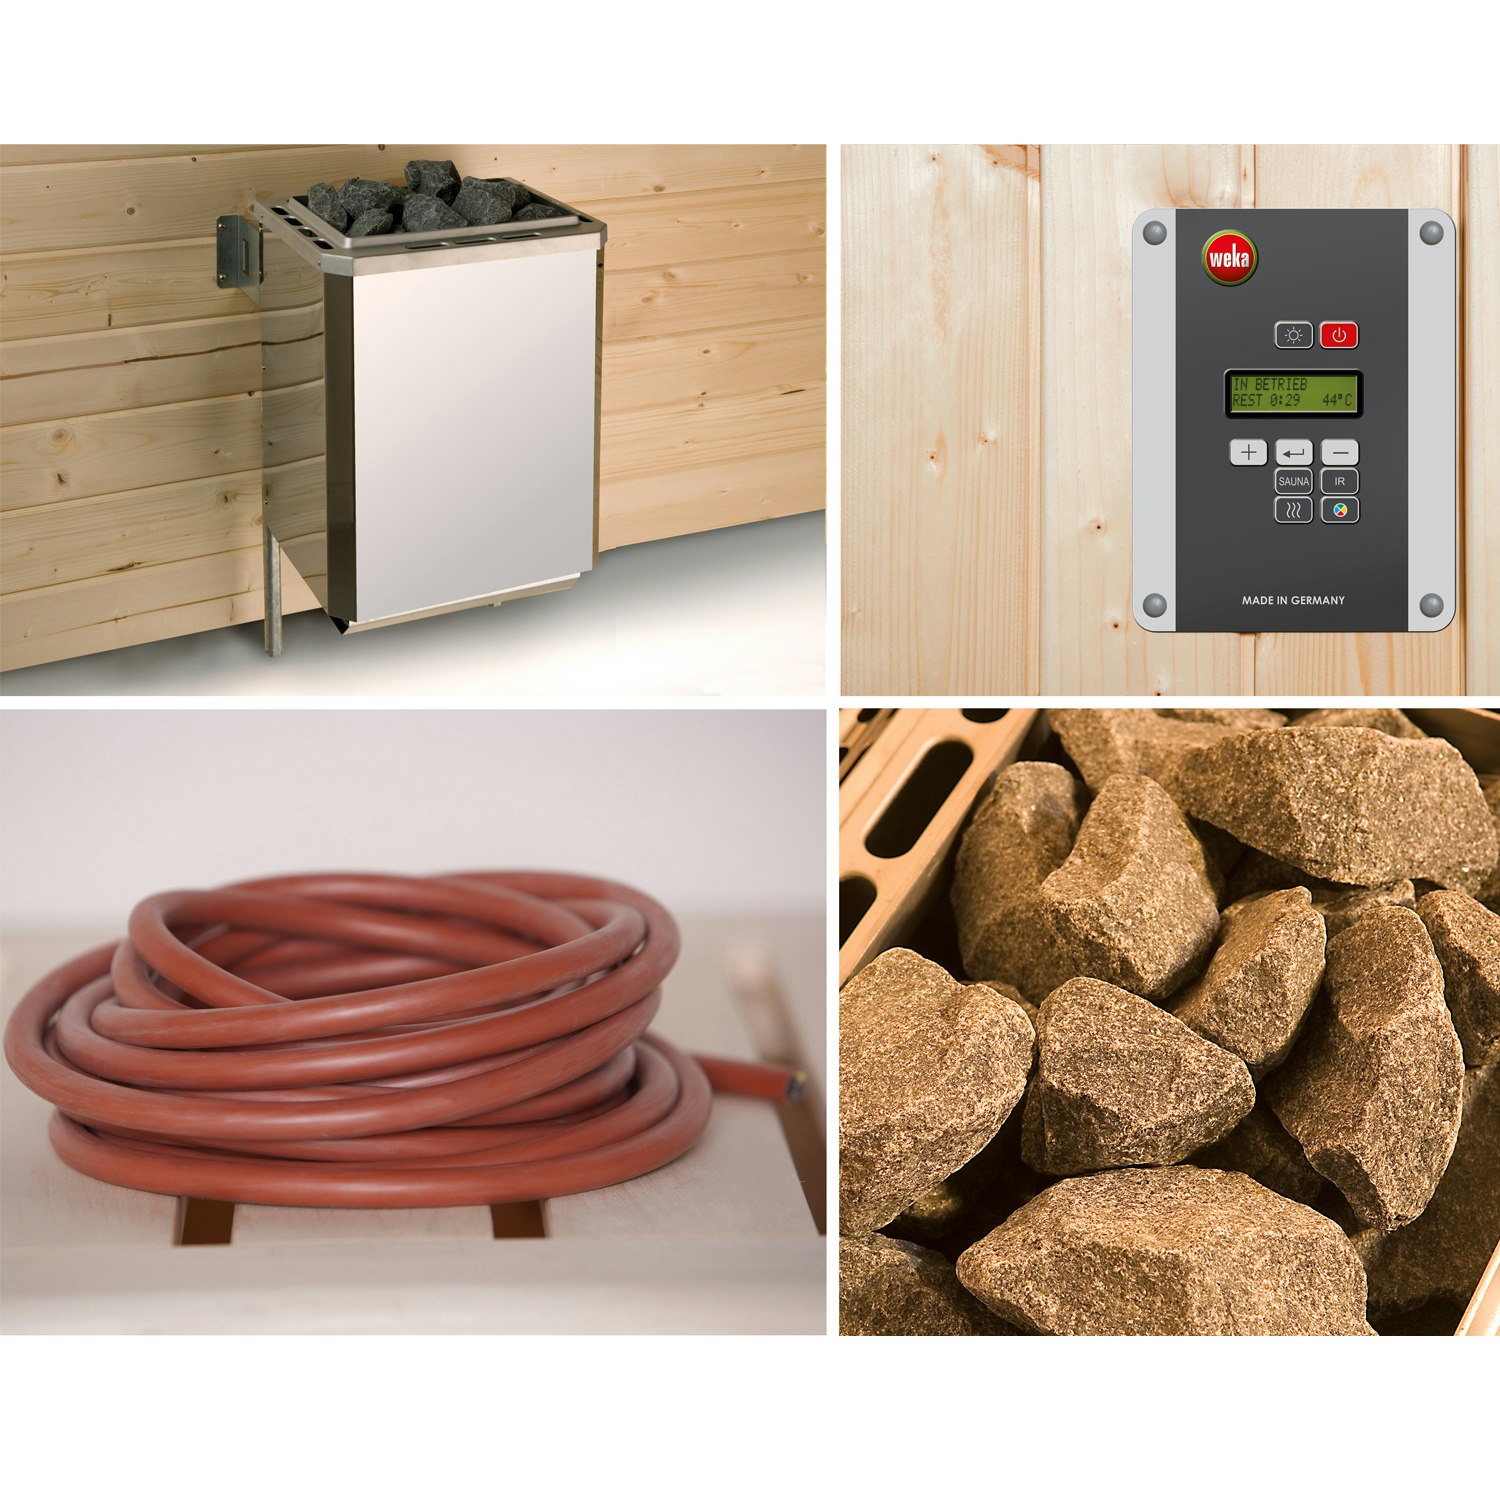 Weka Saunaofen-Set 7 inkl. 7,5 kW BioAktiv Ofen mit Dampfbad-Funktion, Anschlusskabel, Saunasteine, Steuergerät